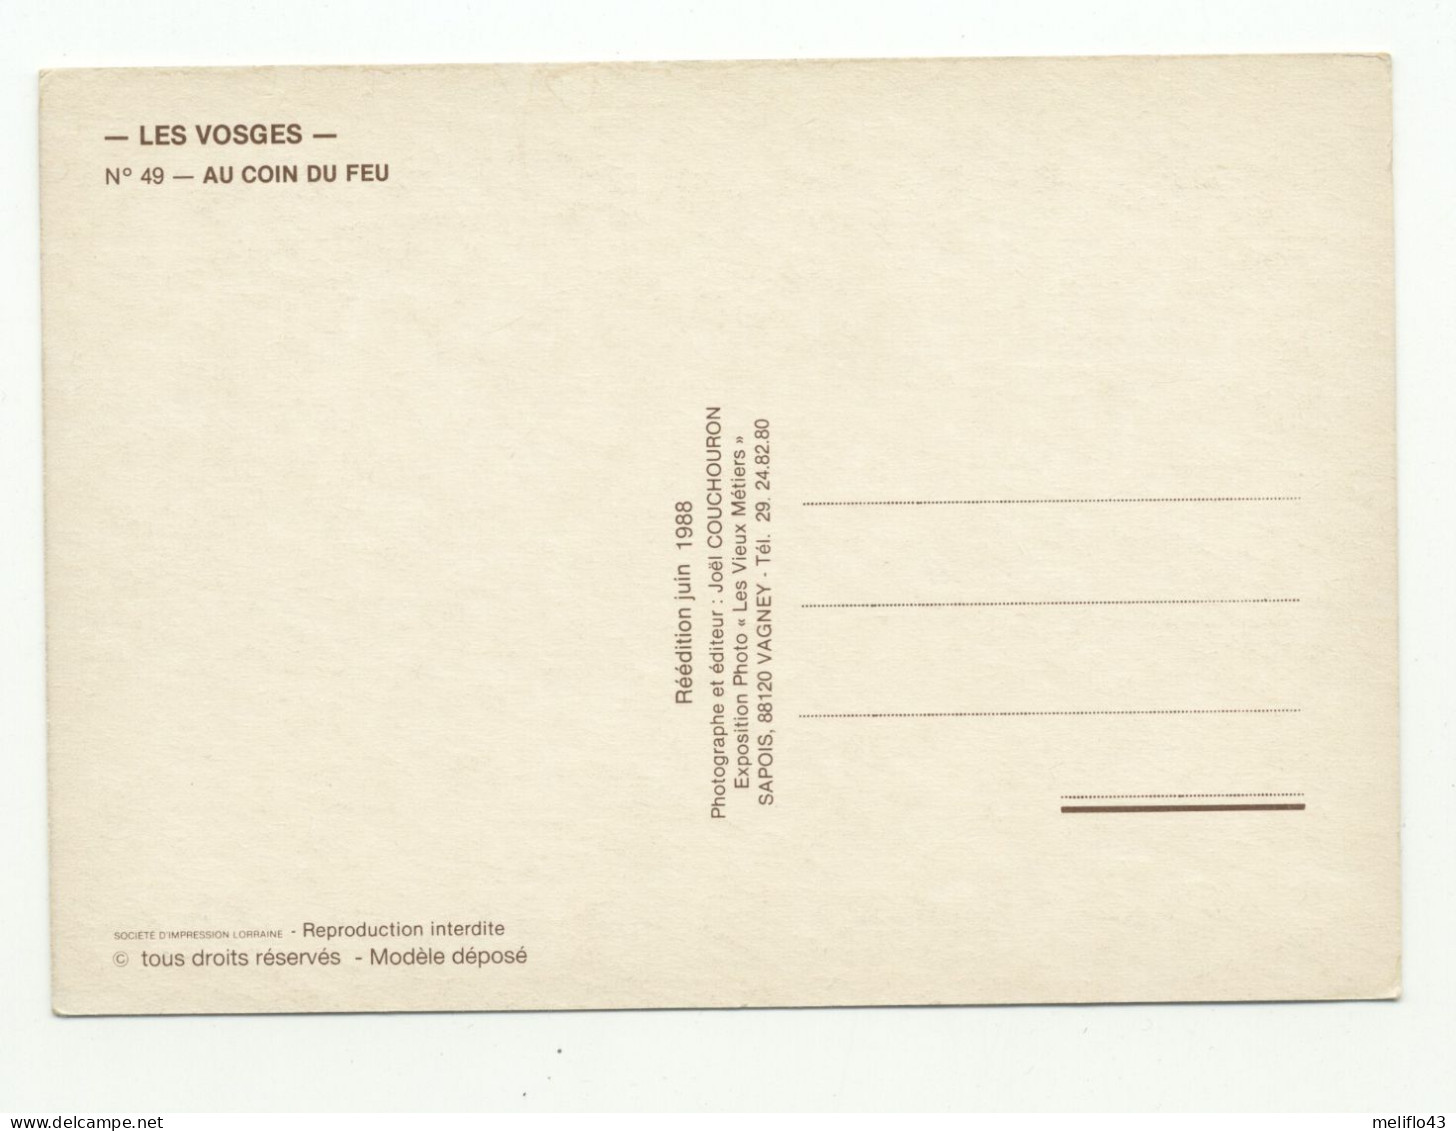 Les Vosges / Joli lot de 18 CP Réédition - Les Vieux Métiers - (format 15cm * 10.5 cm)